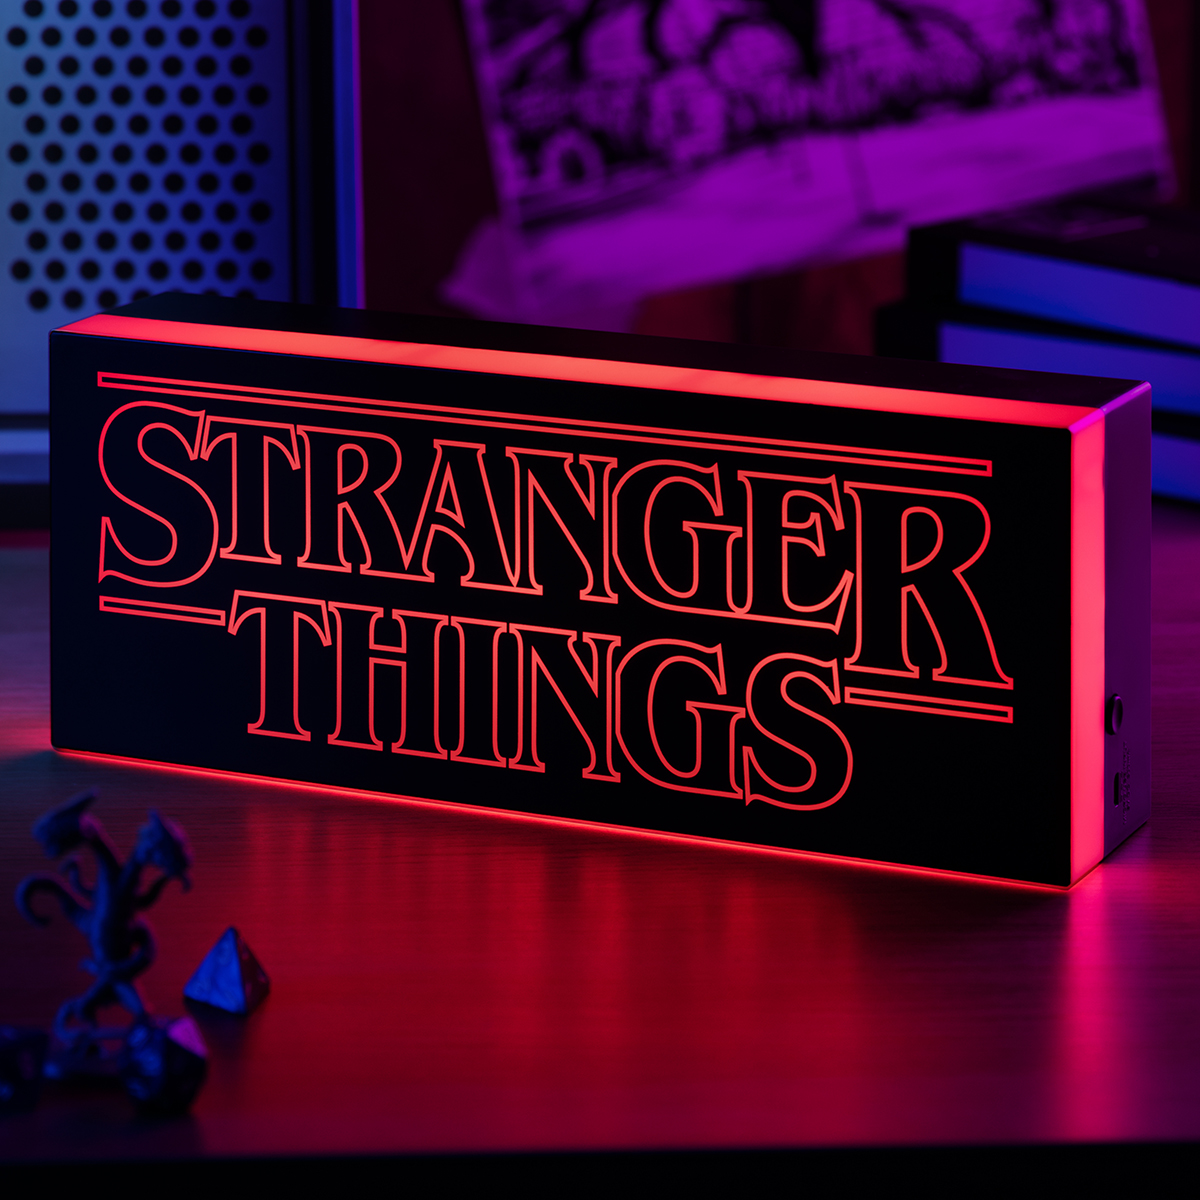 Stranger Things Logo LED Lamp